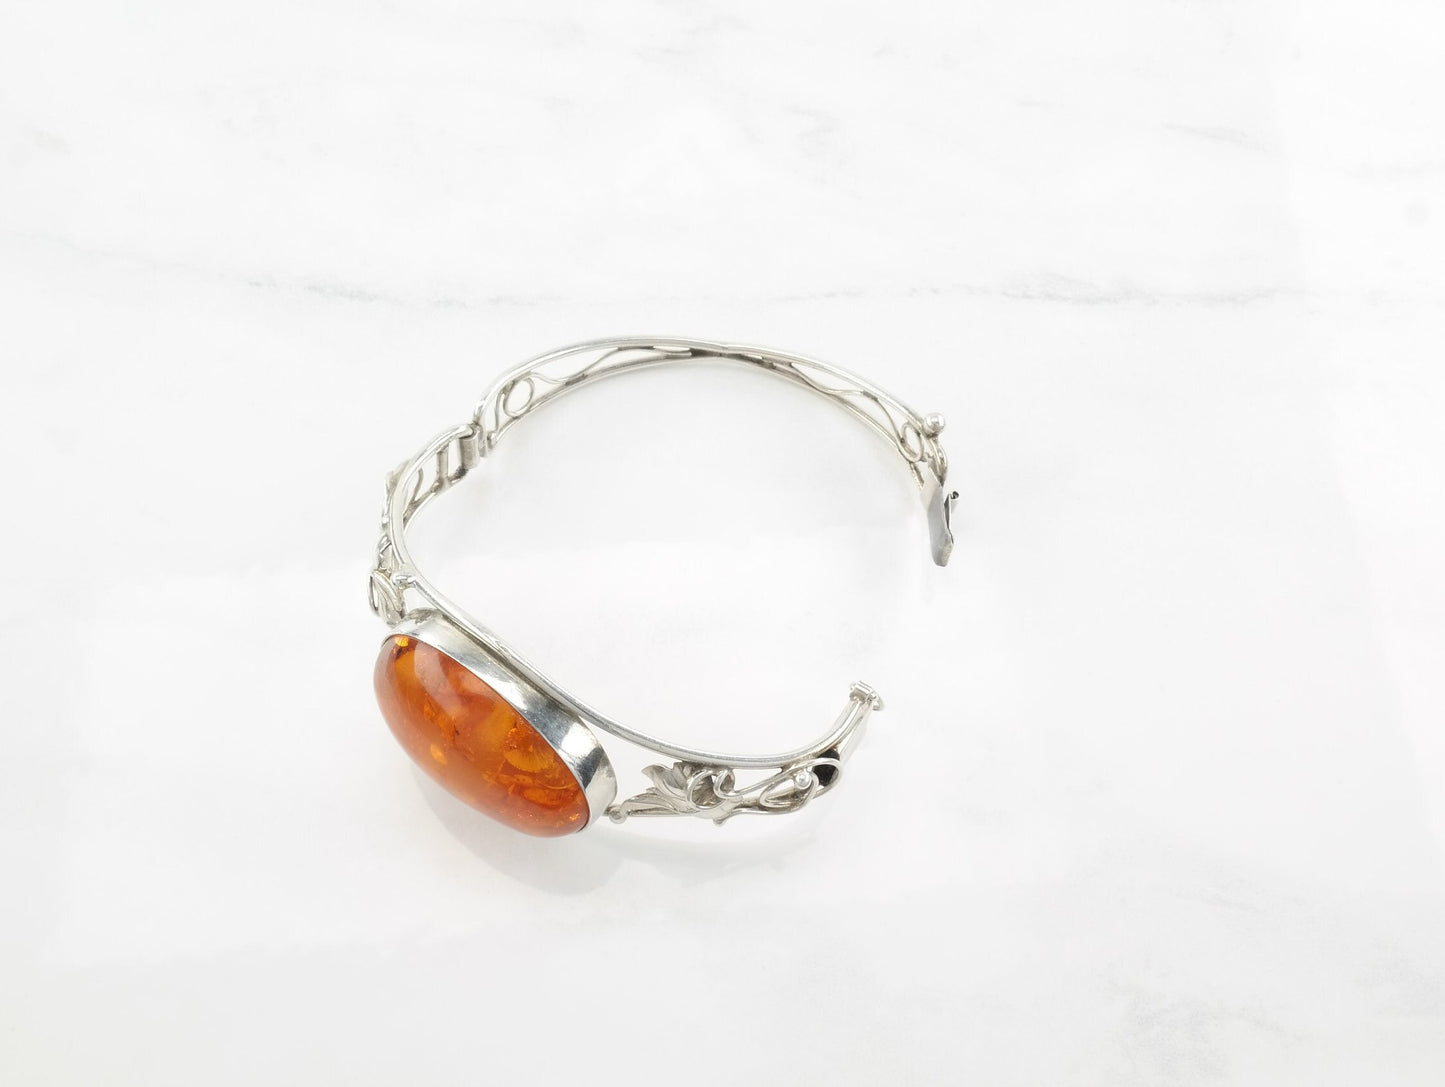 Modernist Sterling Silver Bangle Bracelet Orange Natural Amber